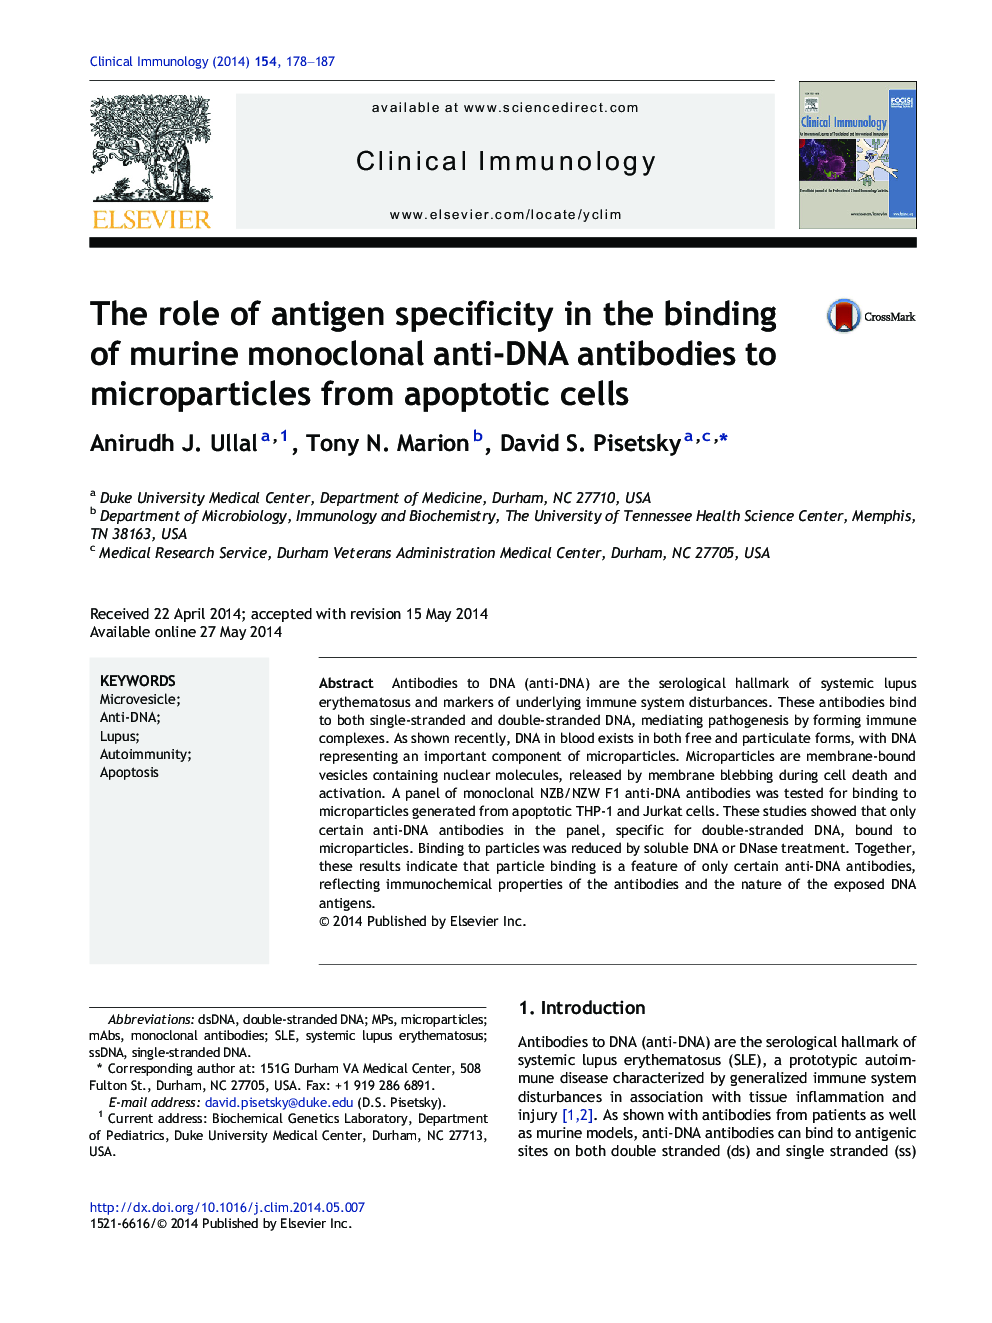 نقش خاصیت آنتیژن در اتصال آنتی بادی ضد میکروبی منوکلونال موش به میکروپارسیت ها از سلول های آپوپتوز 